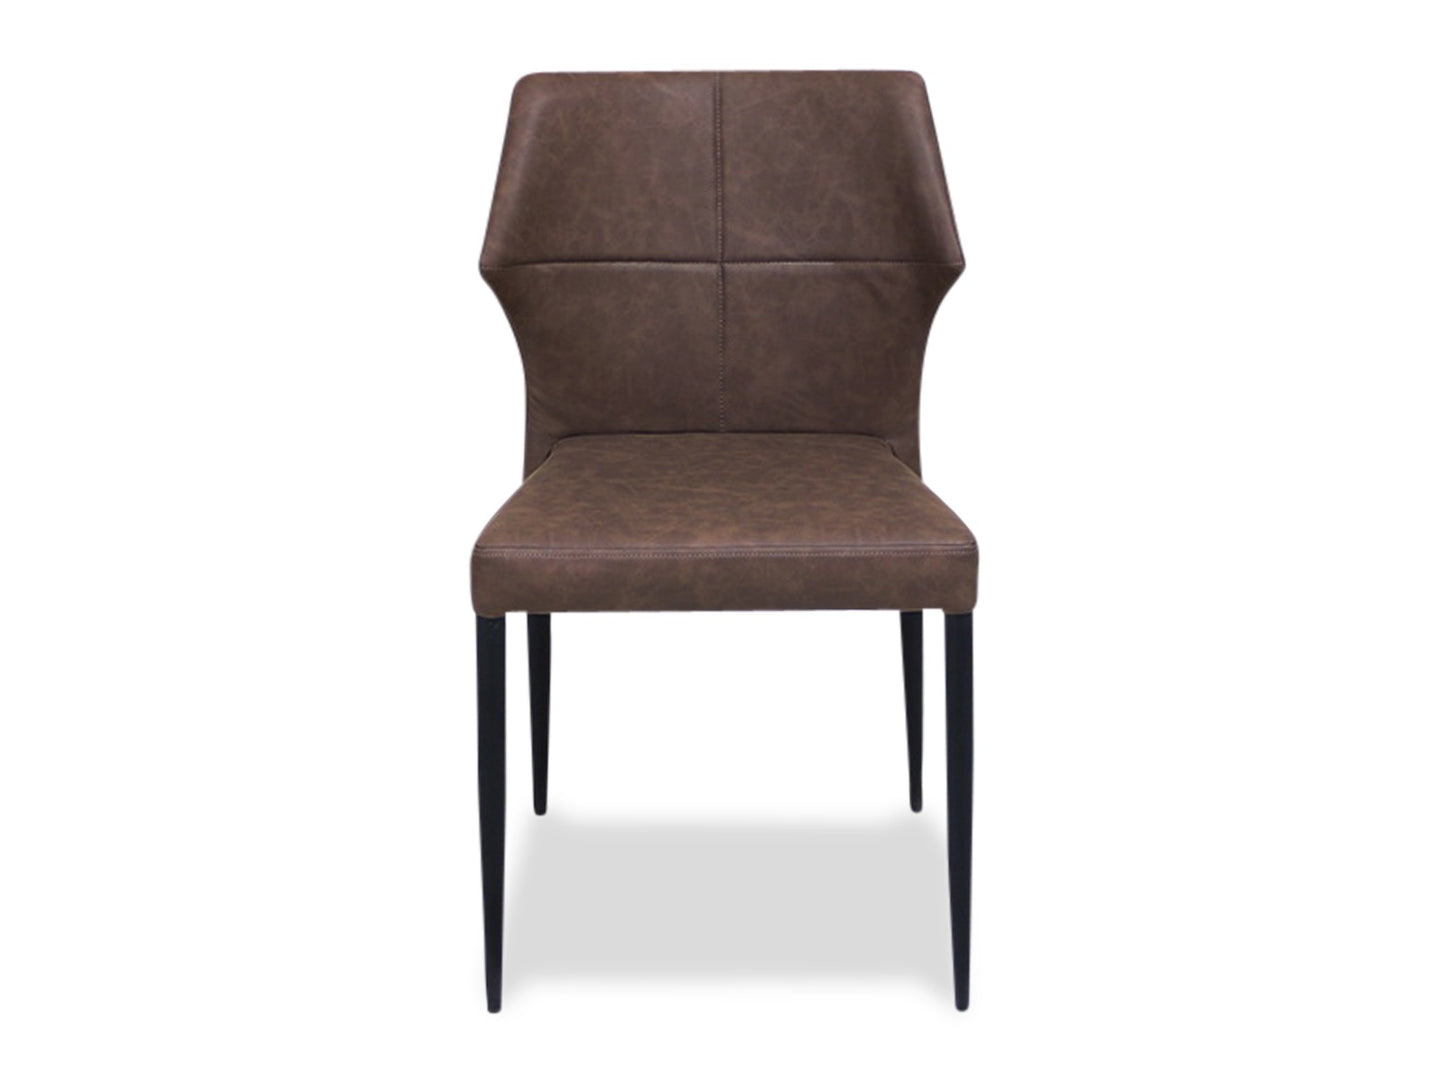 4 stk. Runa Spisebordsstole, brun PU på sæde/ryg, sort metal ben.